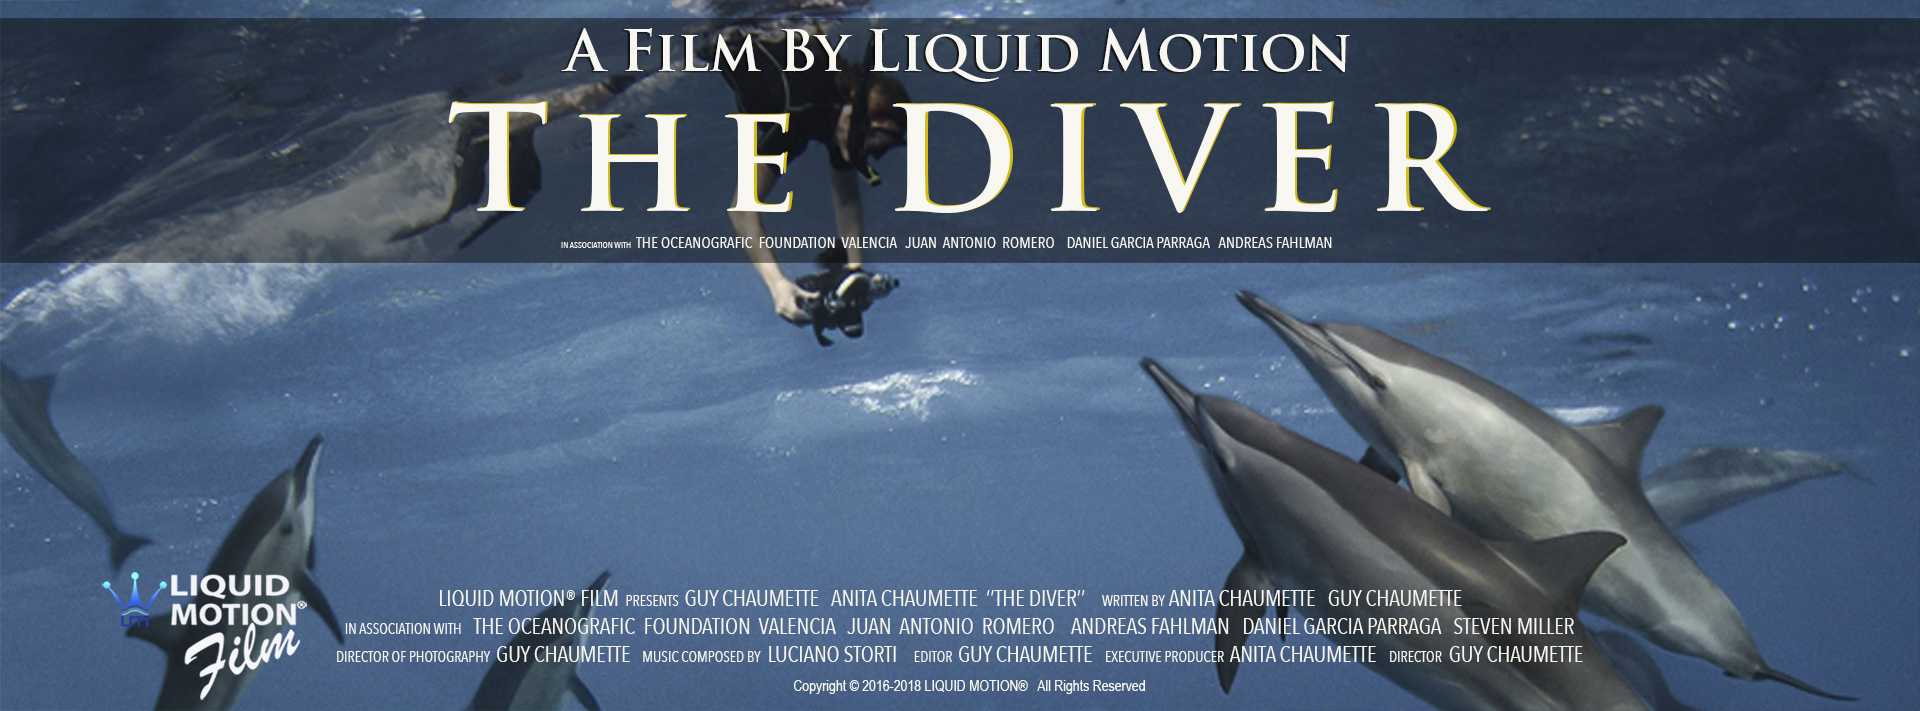 Liquid Motion Film The Diver